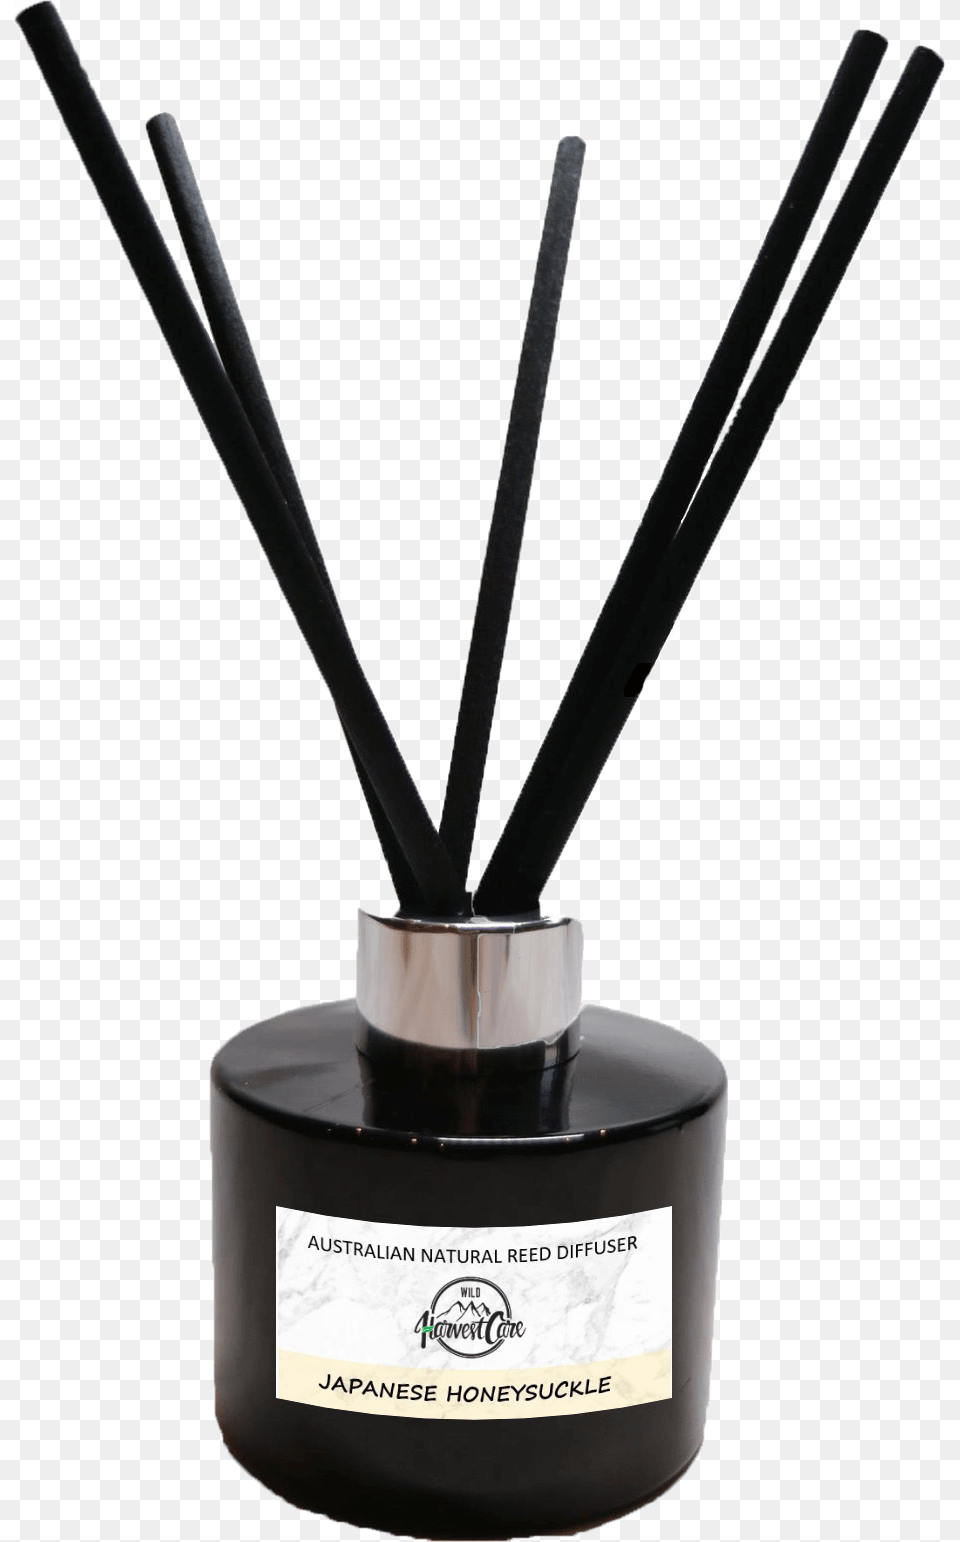 Japanese Honeysuckle Reed Diffuser Eye Liner, Bottle, Smoke Pipe, Ink Bottle, Incense Png